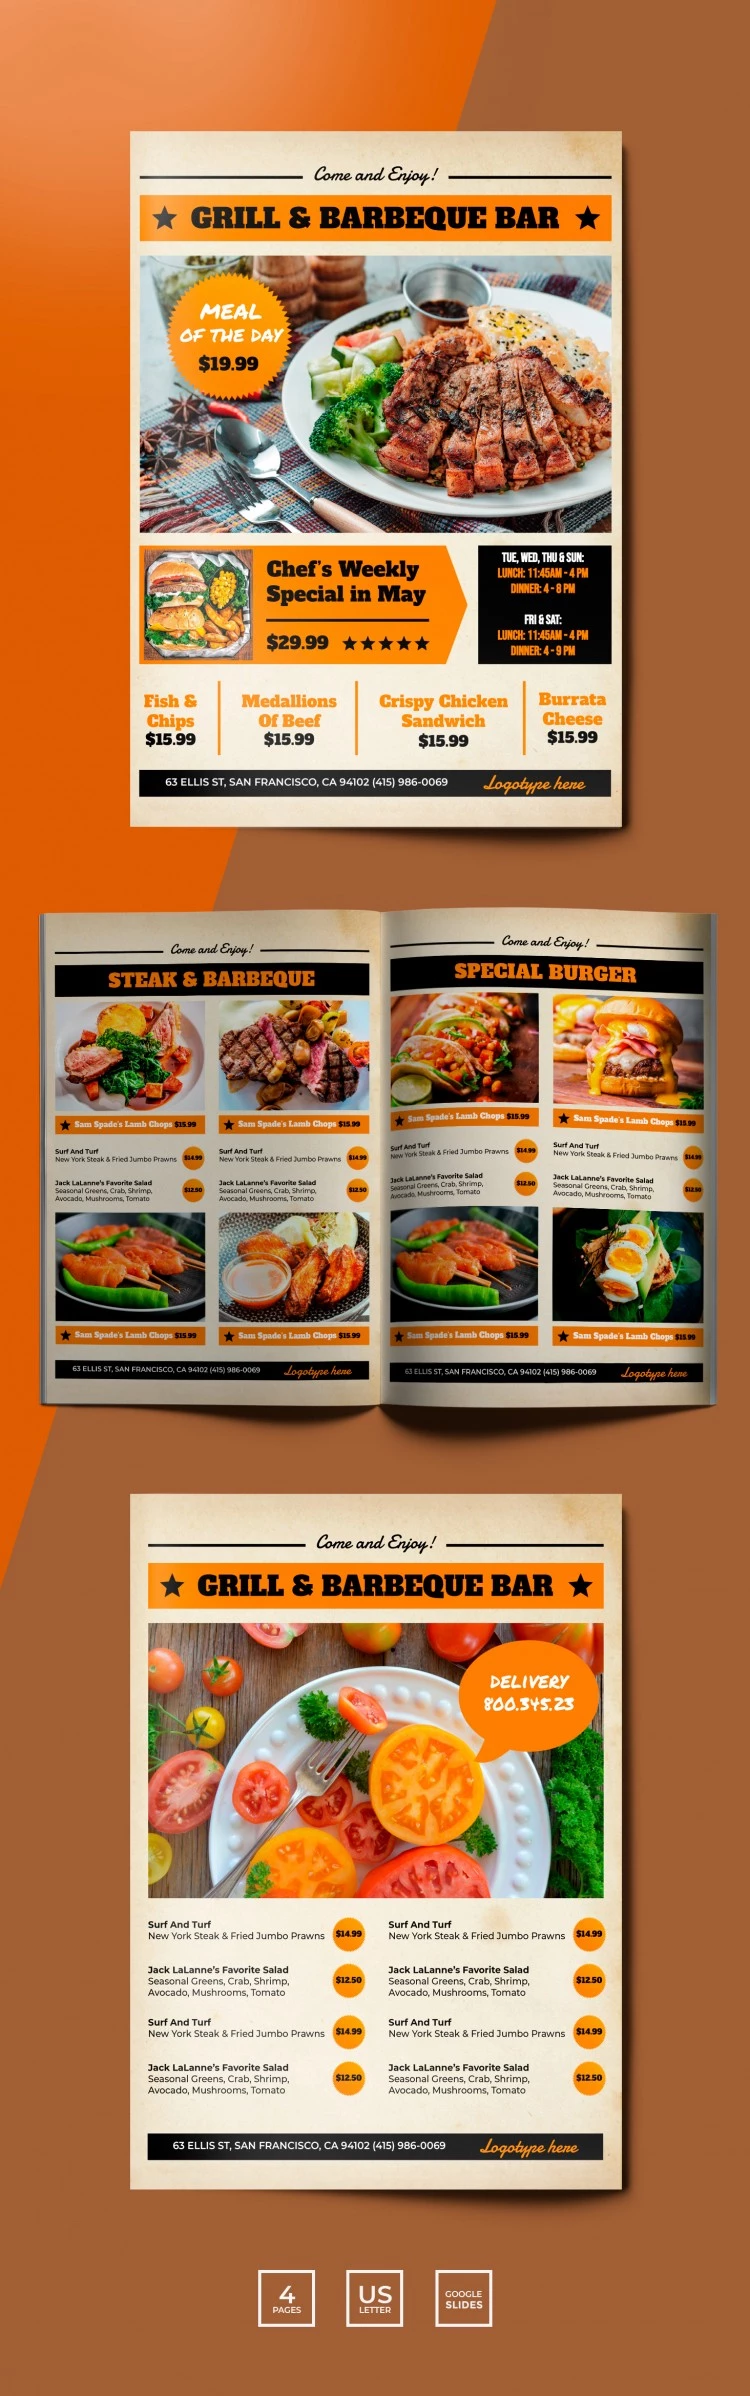 烤肉和烧烤餐厅菜单 - free Google Docs Template - 10066402